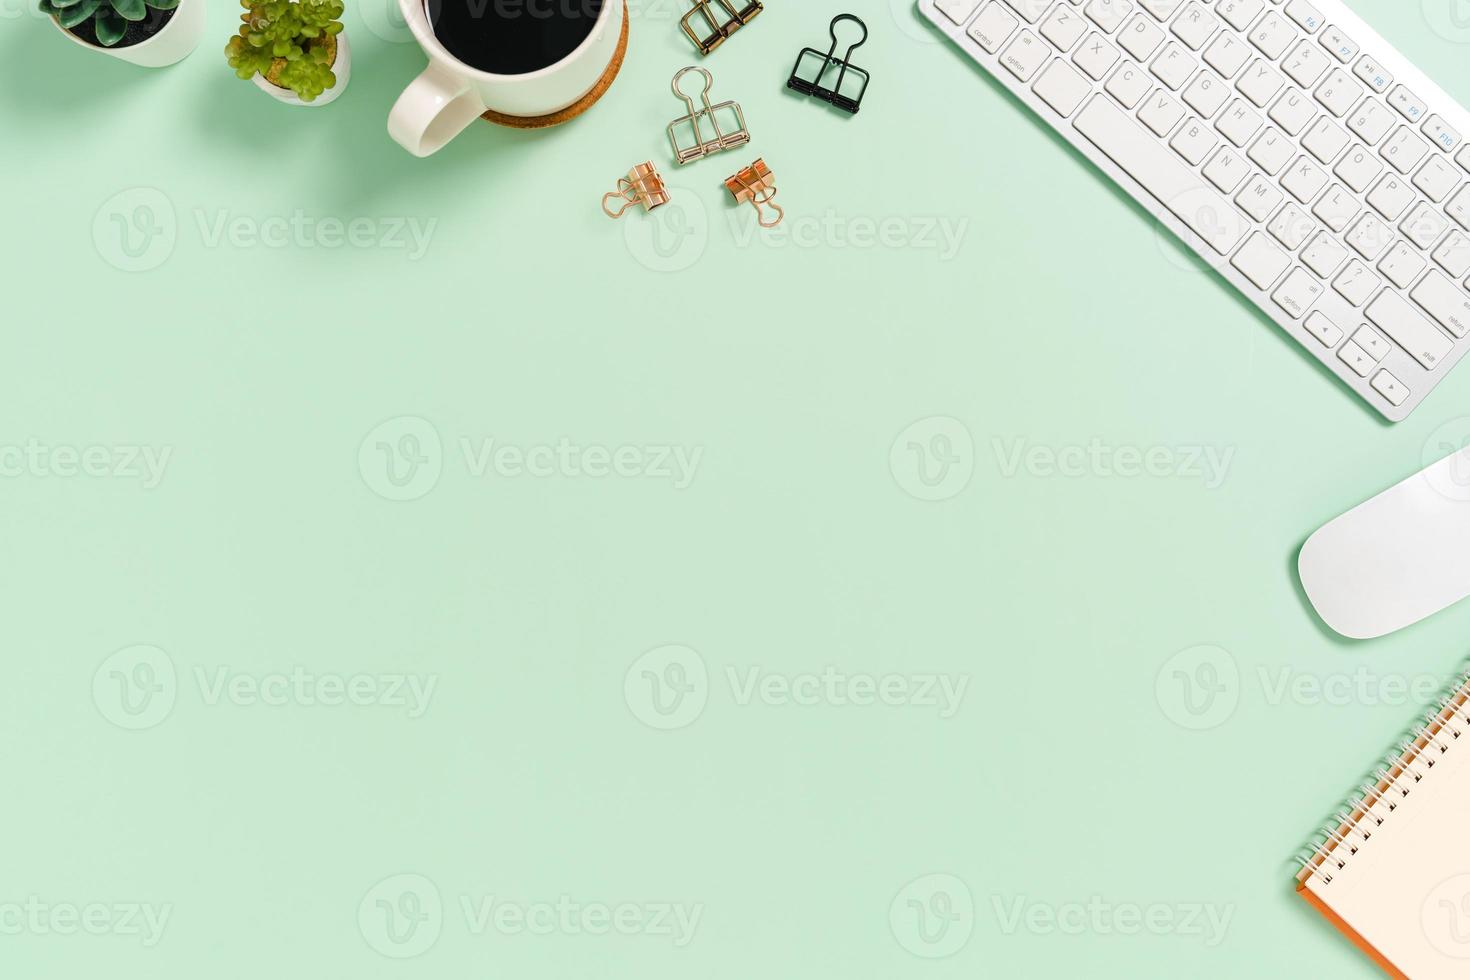 espacio de trabajo mínimo: foto creativa plana del escritorio del espacio de trabajo. Escritorio de oficina de vista superior con teclado y mouse sobre fondo de color verde pastel. vista superior con espacio de copia, fotografía plana.